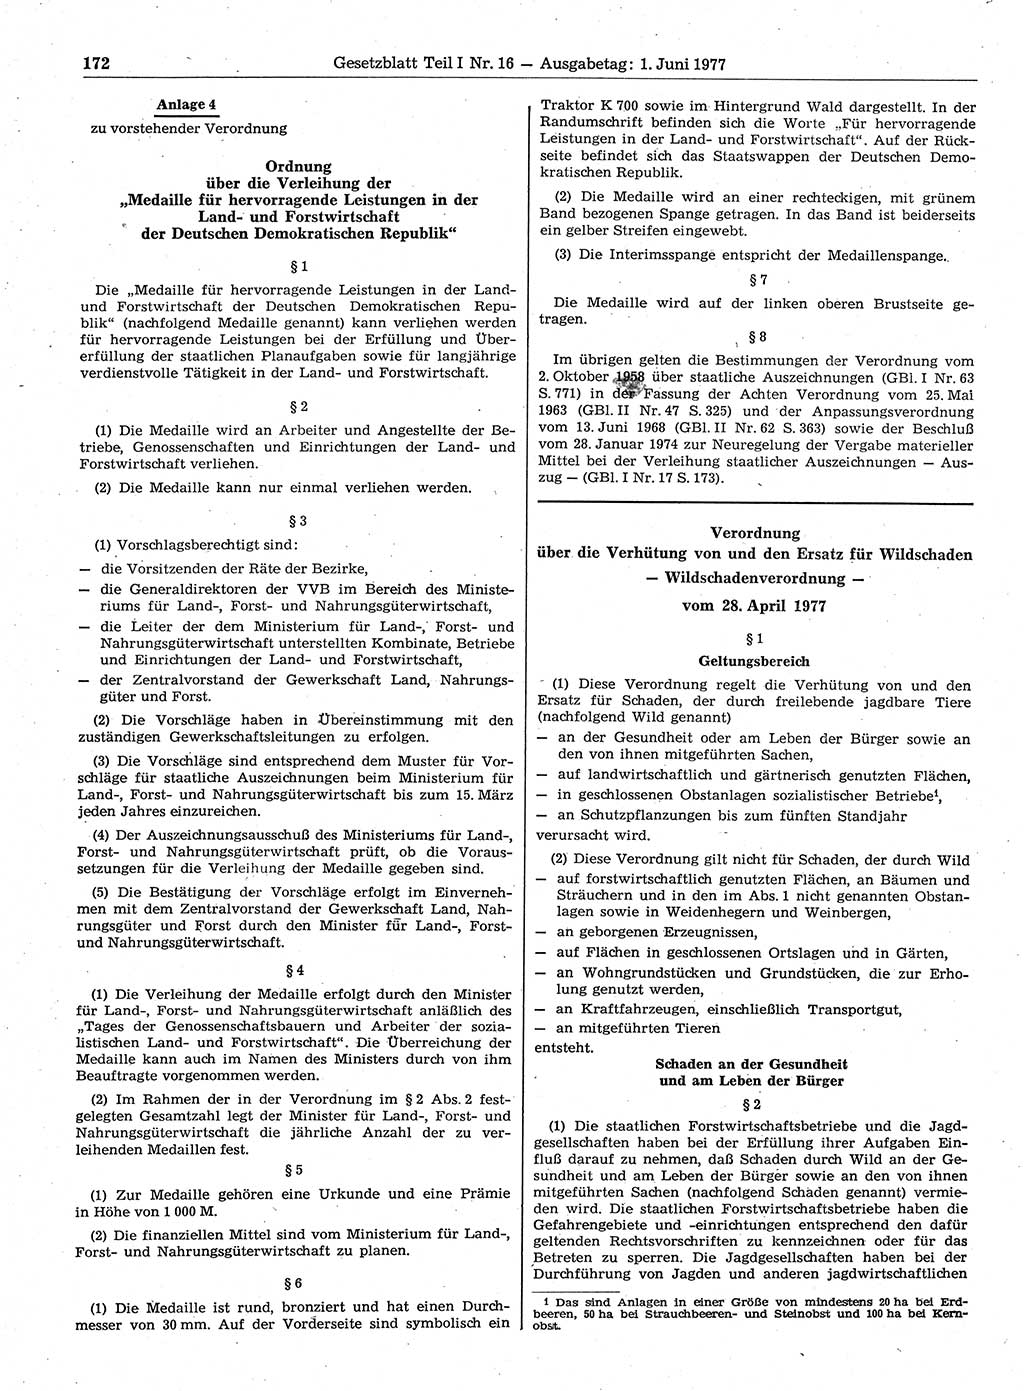 Gesetzblatt (GBl.) der Deutschen Demokratischen Republik (DDR) Teil Ⅰ 1977, Seite 172 (GBl. DDR Ⅰ 1977, S. 172)